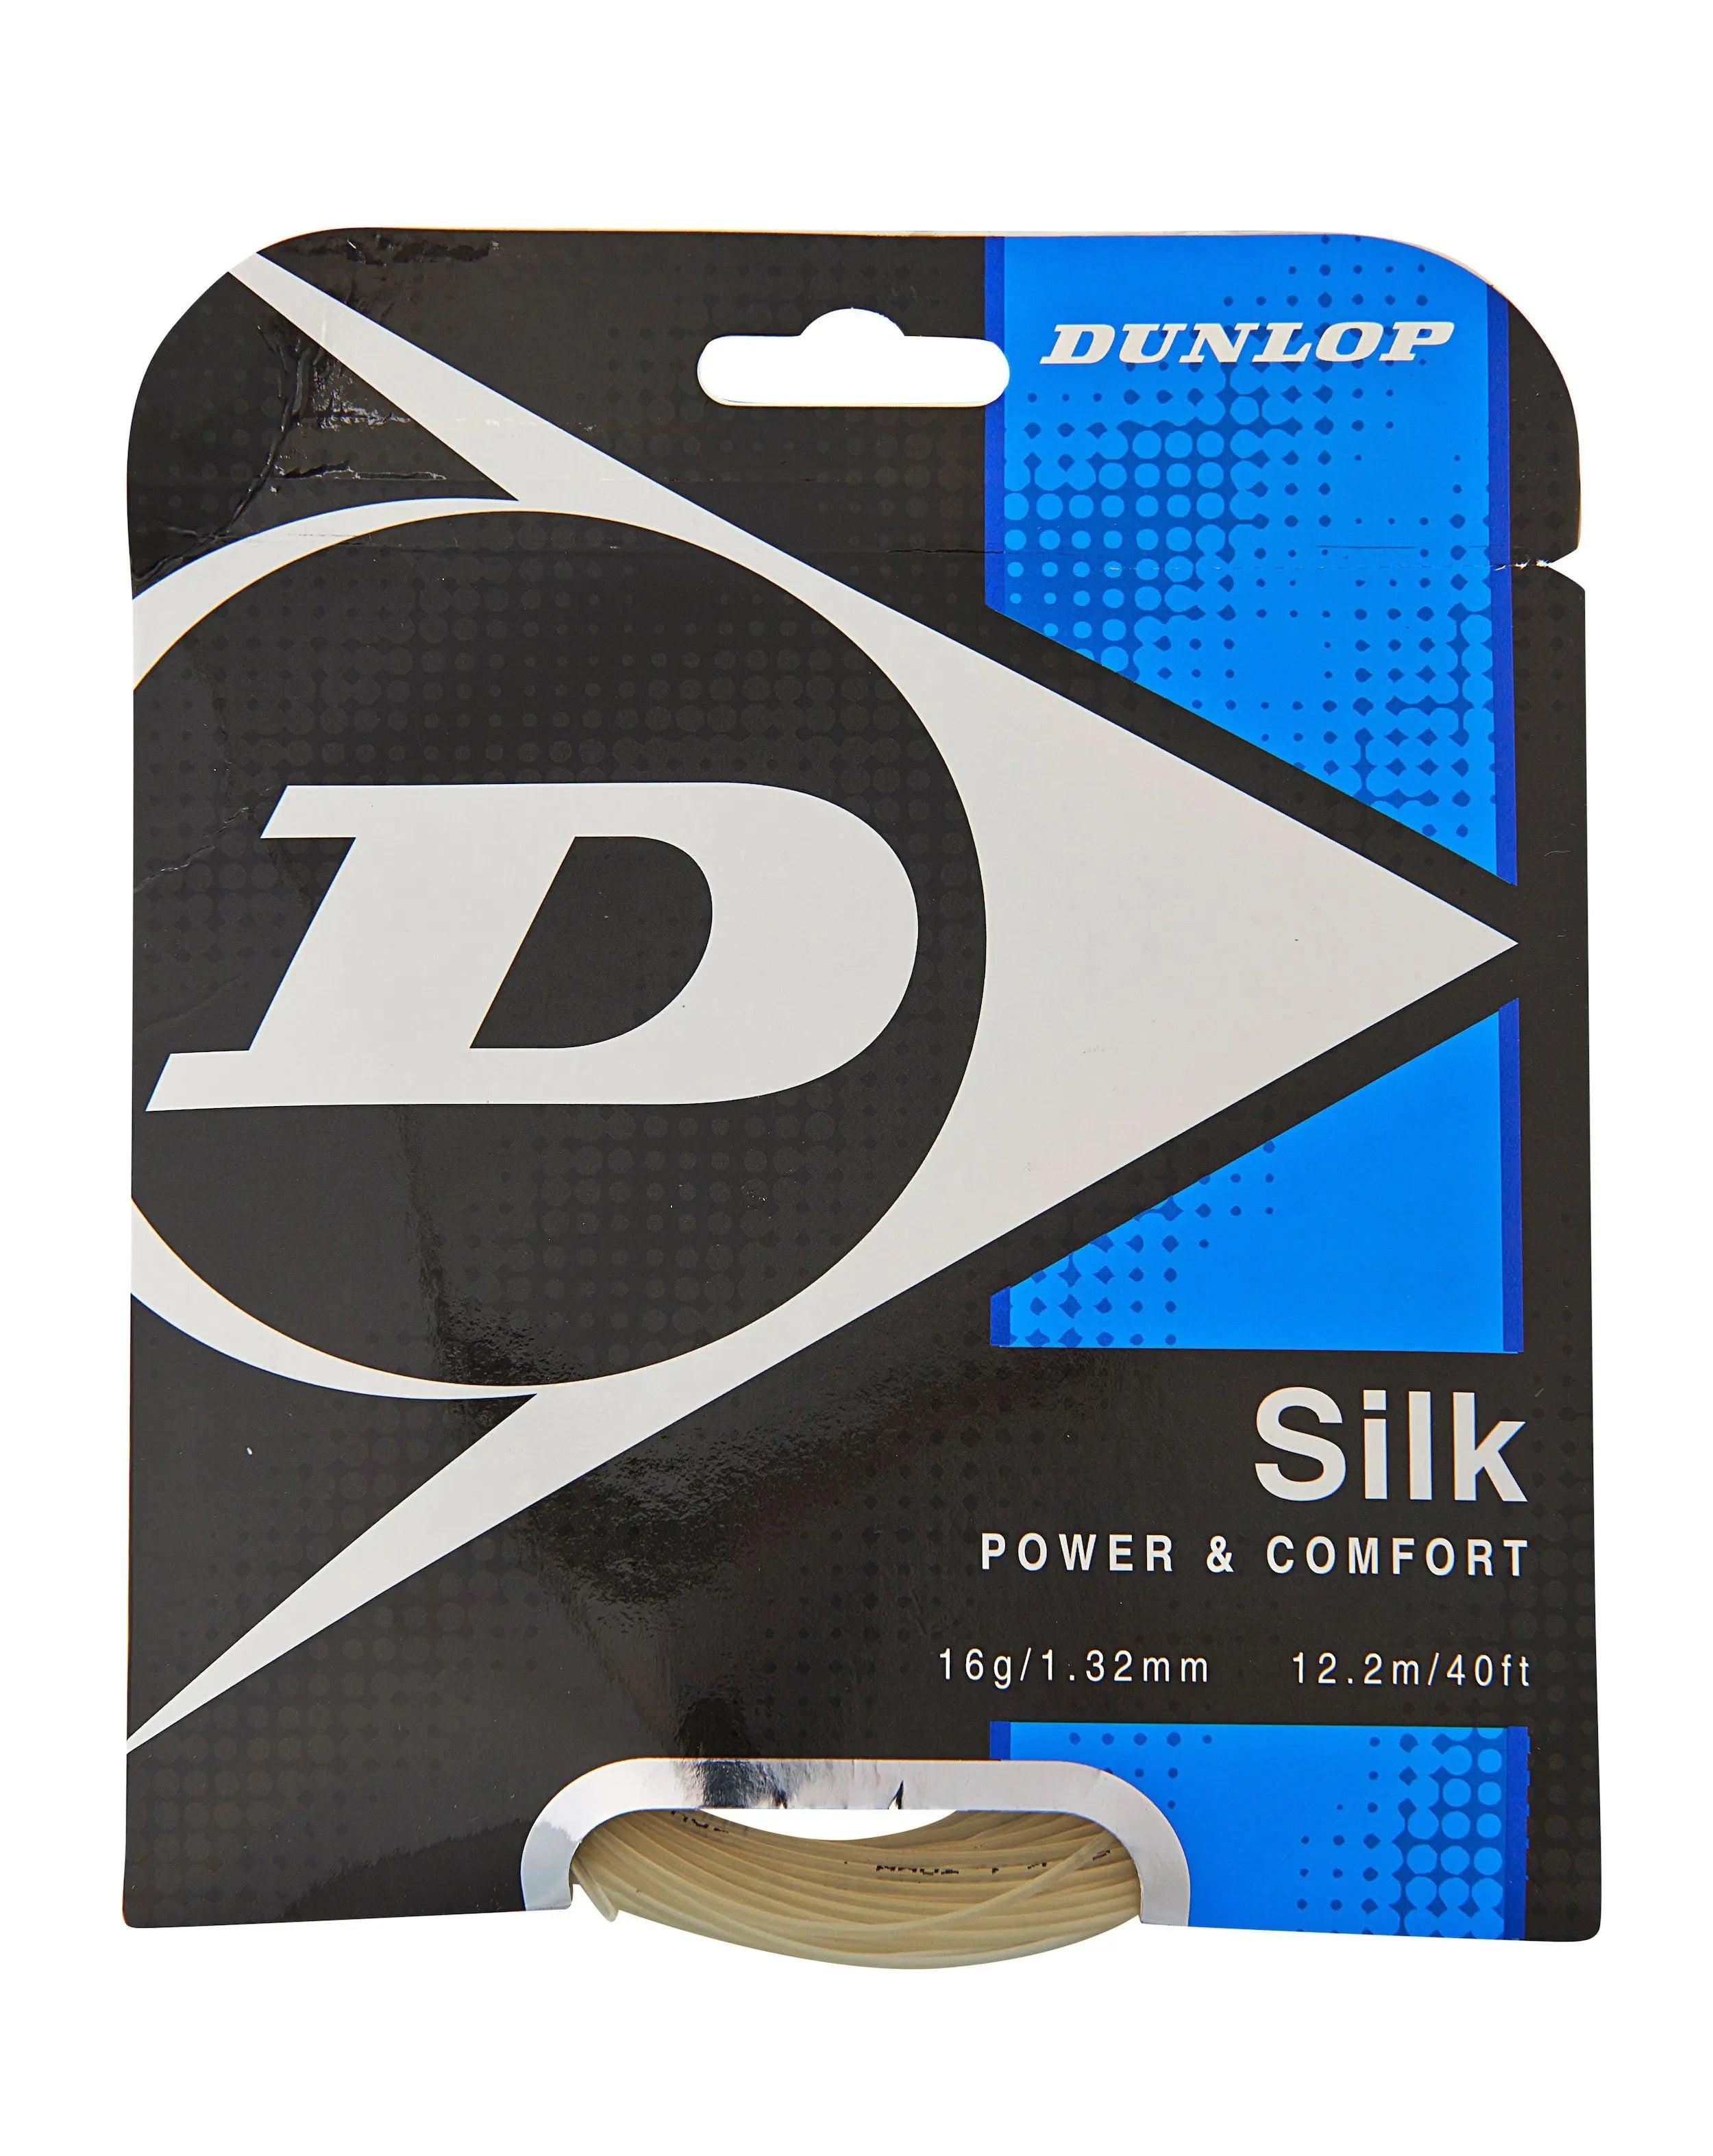 Dunlop Silk 16 Tennis String Set - Natural Color Racquet Point